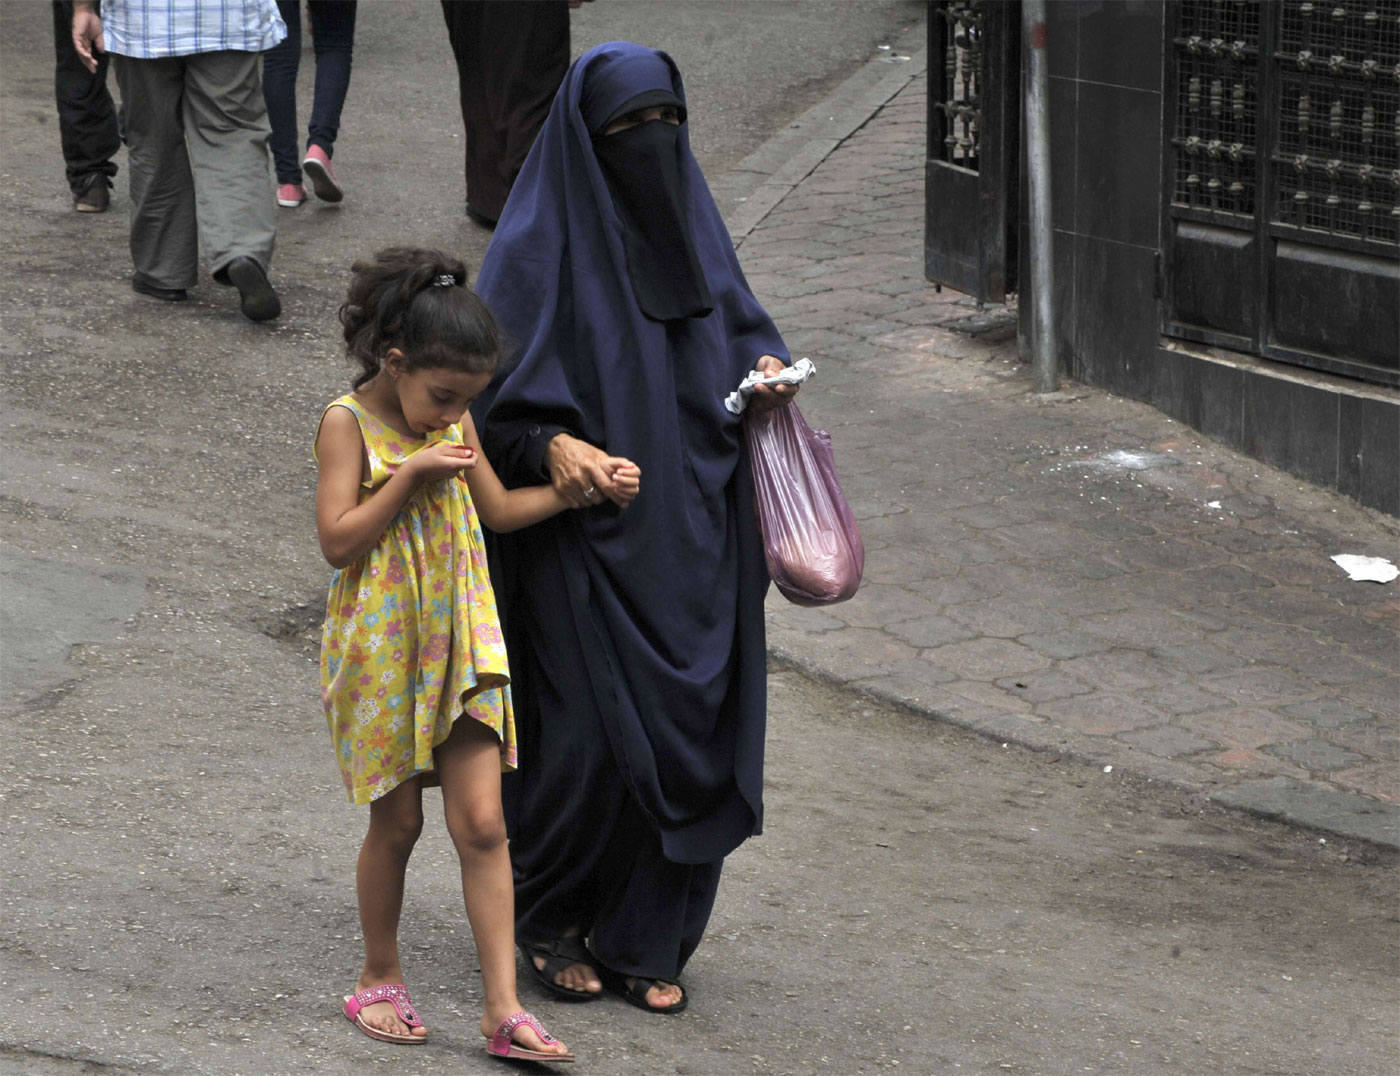 Not so many women wear the niqab in Algeria